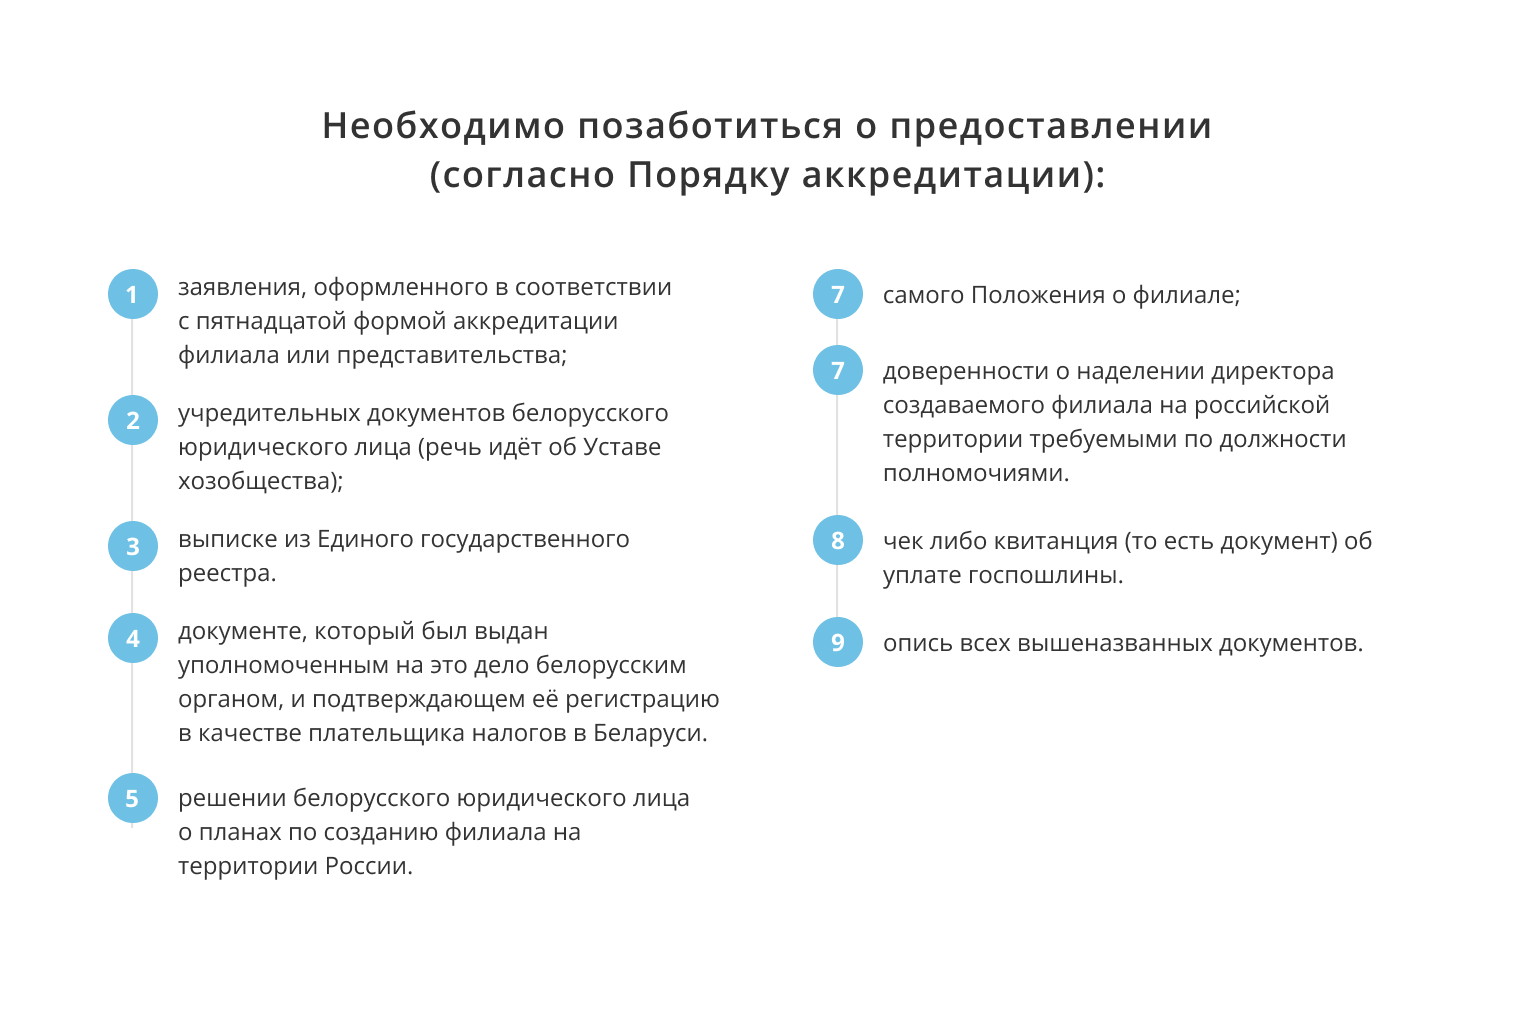 Как в Российской Федерации создать филиал белорусского юрлица в 2021 году?